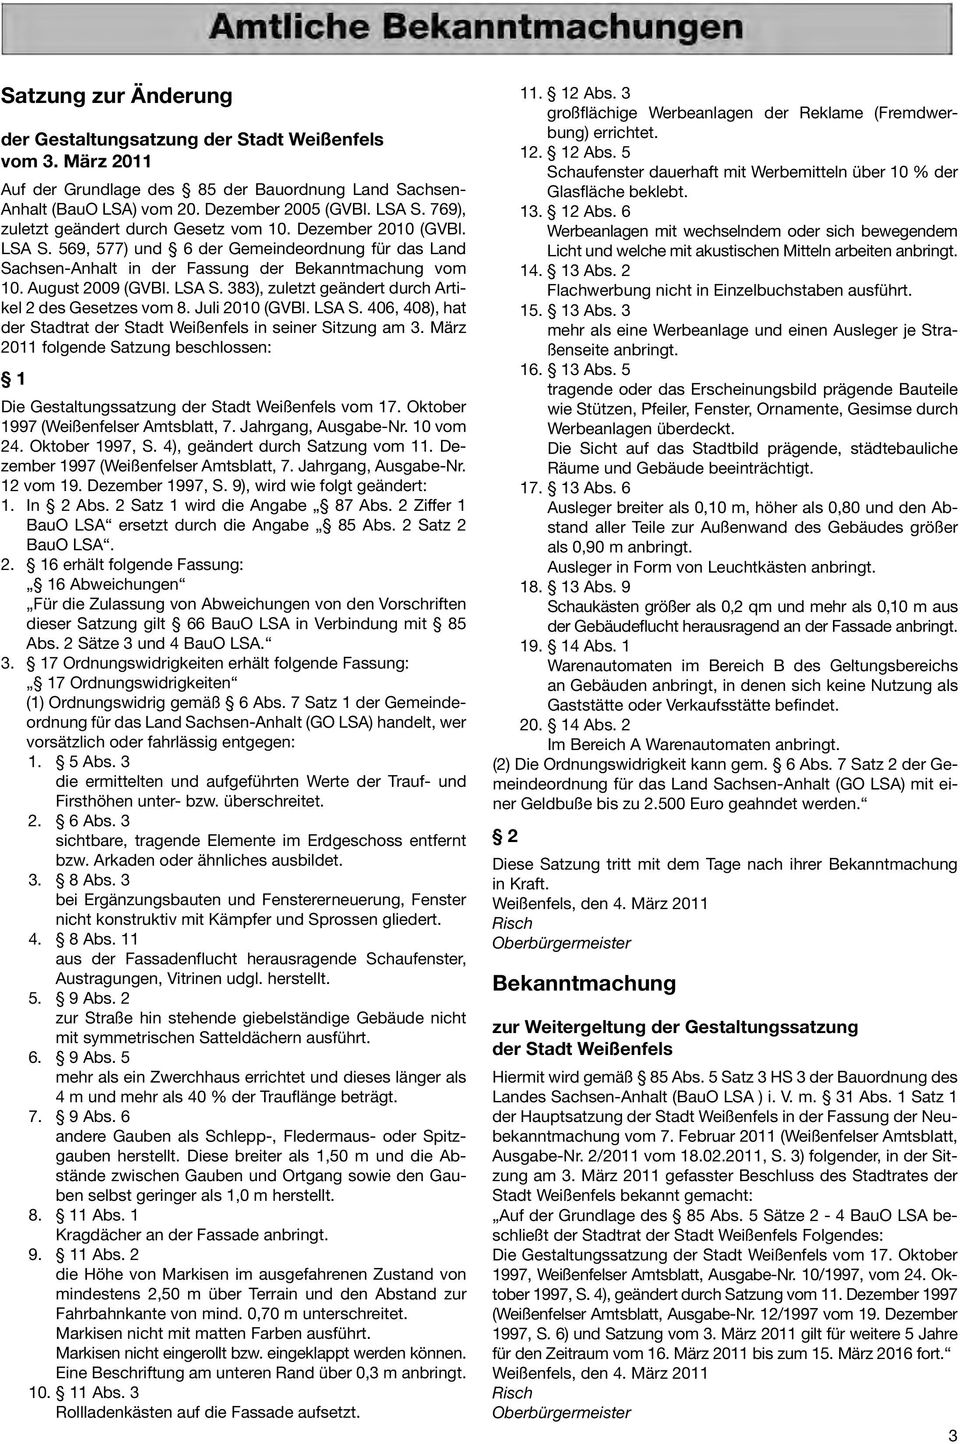 LSA S. 383), zuletzt geändert durch Artikel 2 des Gesetzes vom 8. Juli 2010 (GVBl. LSA S. 406, 408), hat der Stadtrat der Stadt Weißenfels in seiner Sitzung am 3.